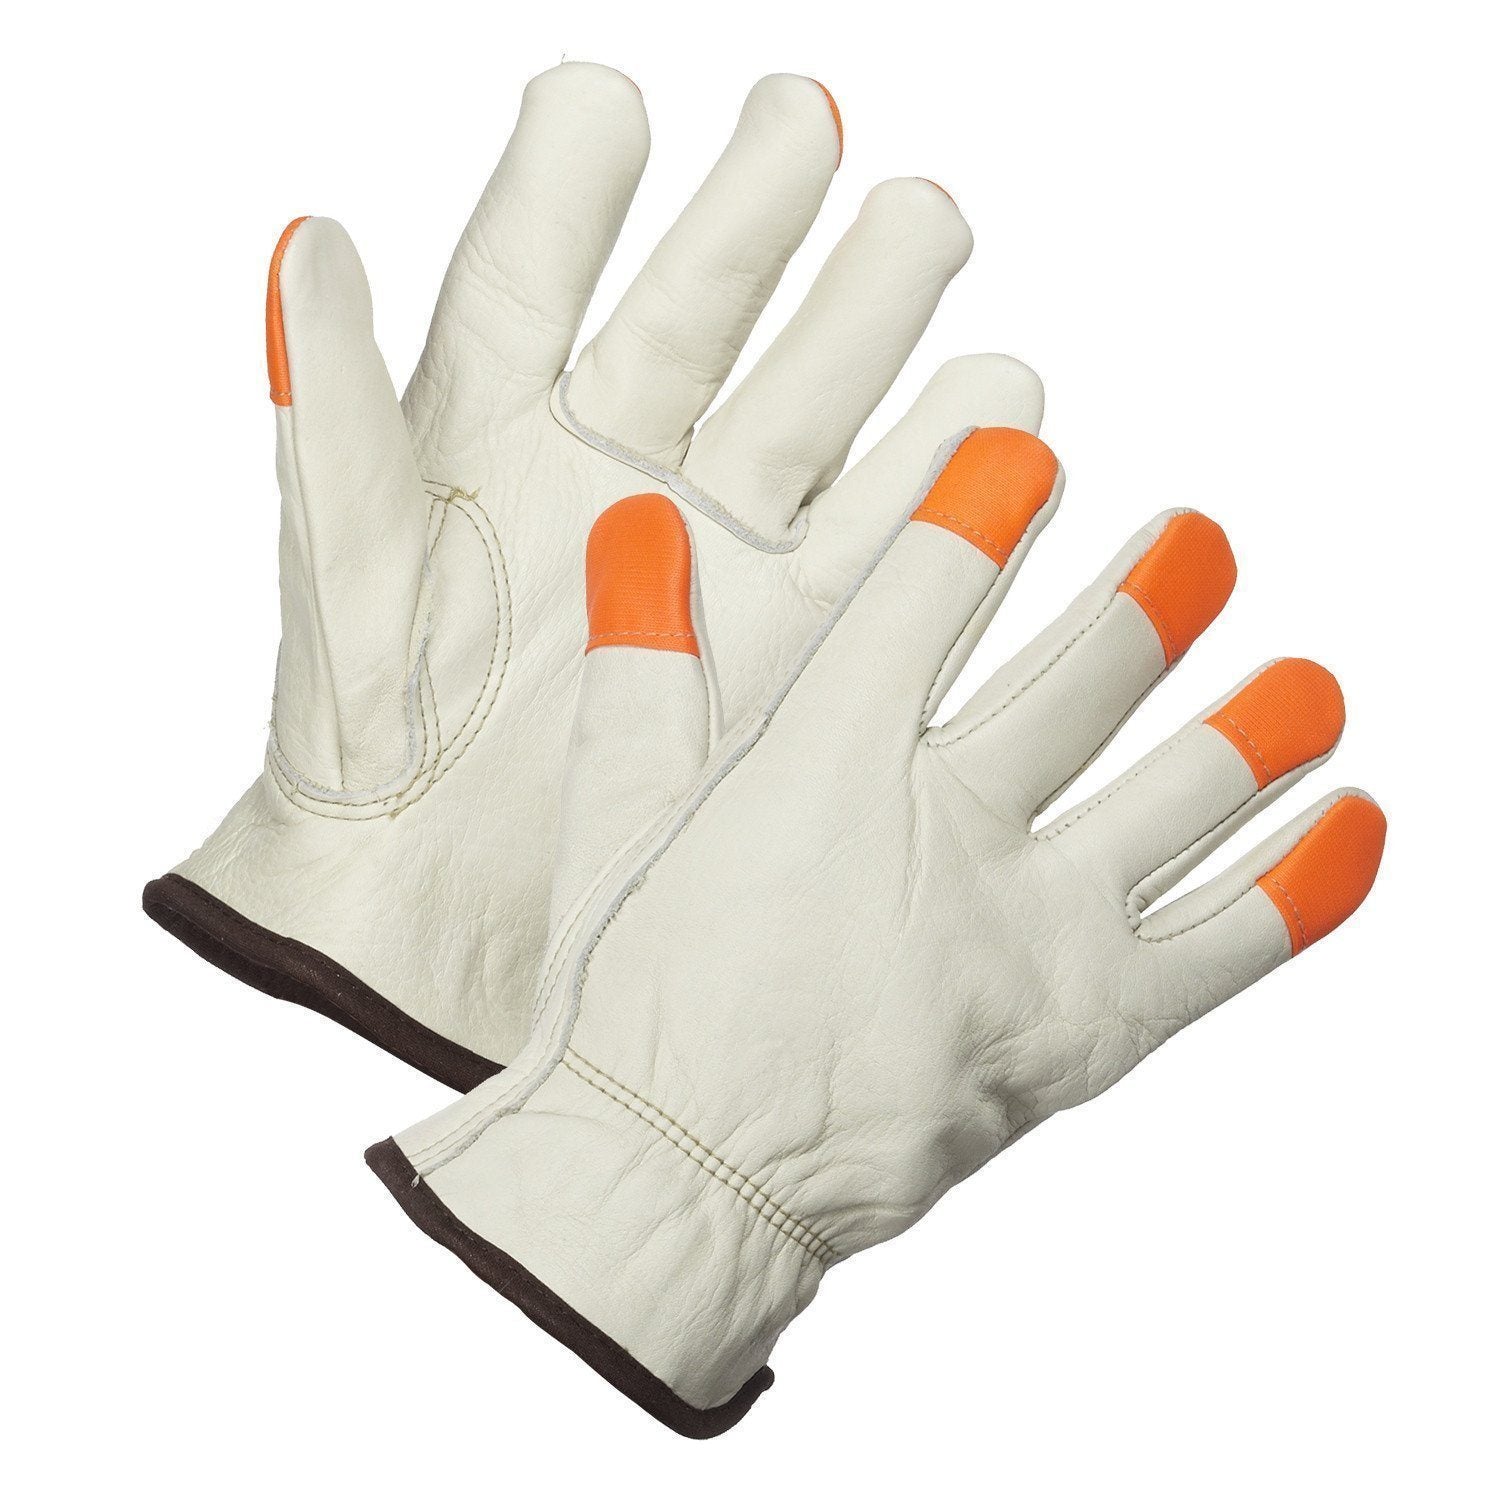 Driver's Glove, Thinsulate Lined, Hi-Vis Fingertips - Hi Vis Safety